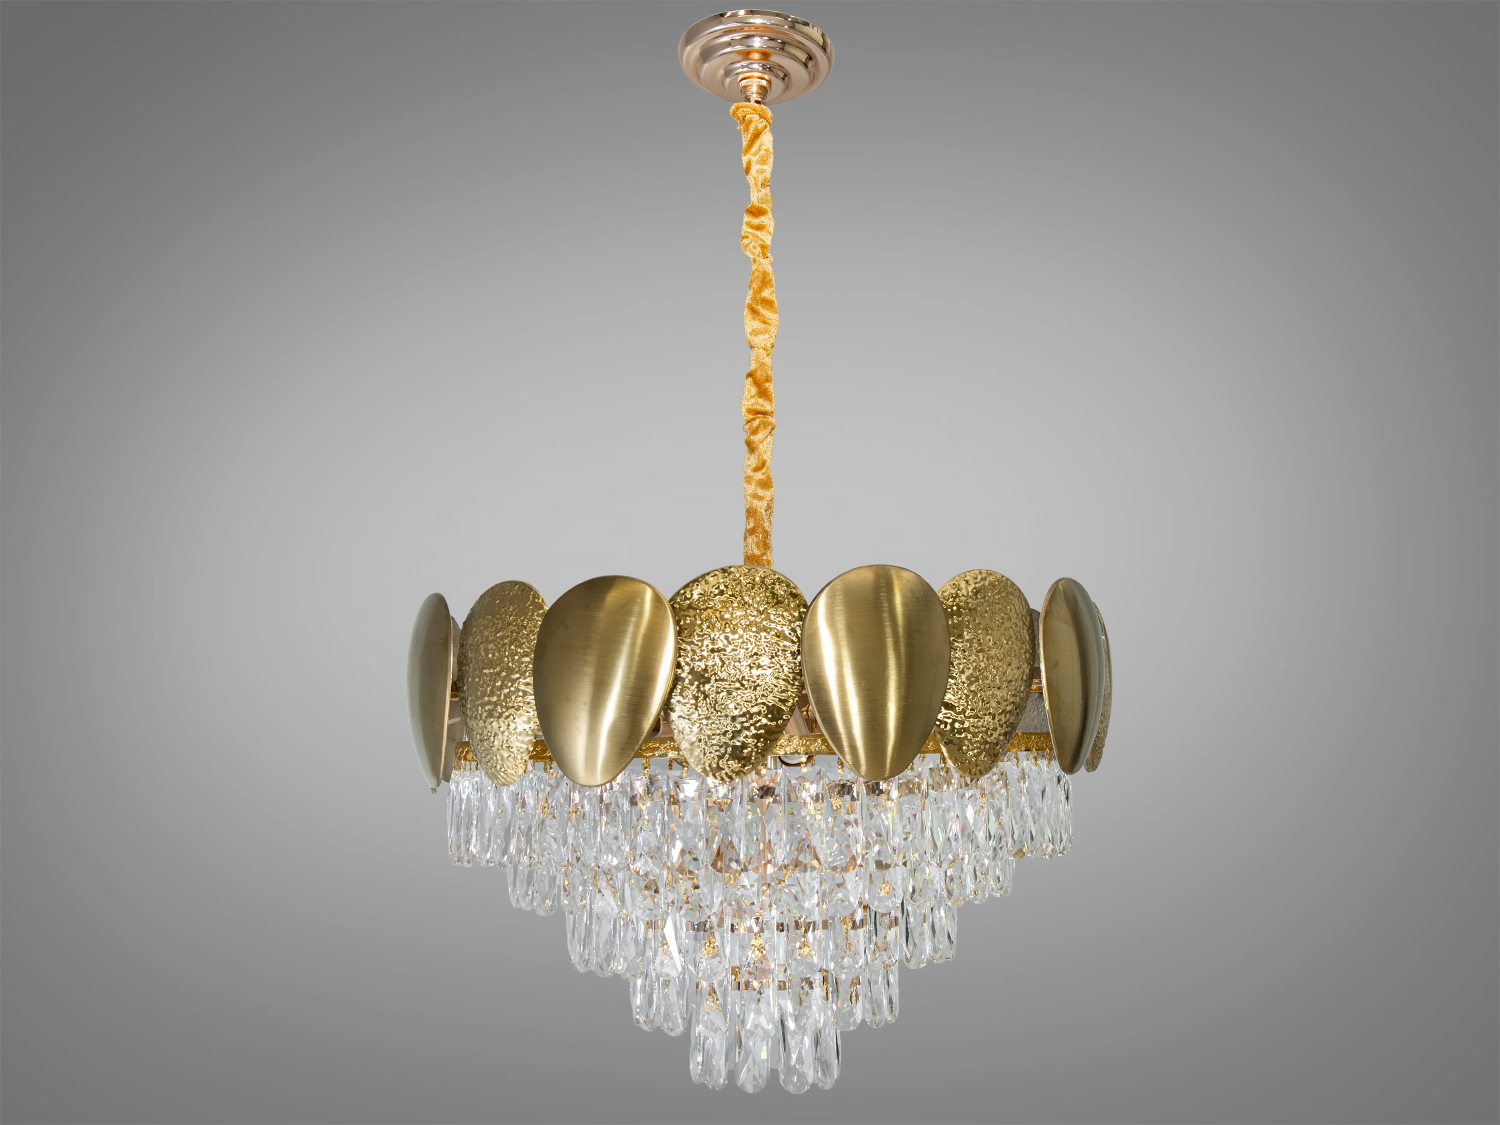 Золота кришталева підвісна люстра для вітальні на 11 ламп. Люстра має ідеальне співвідношення ціни та якості, що робить її привабливою доступною покупкою.